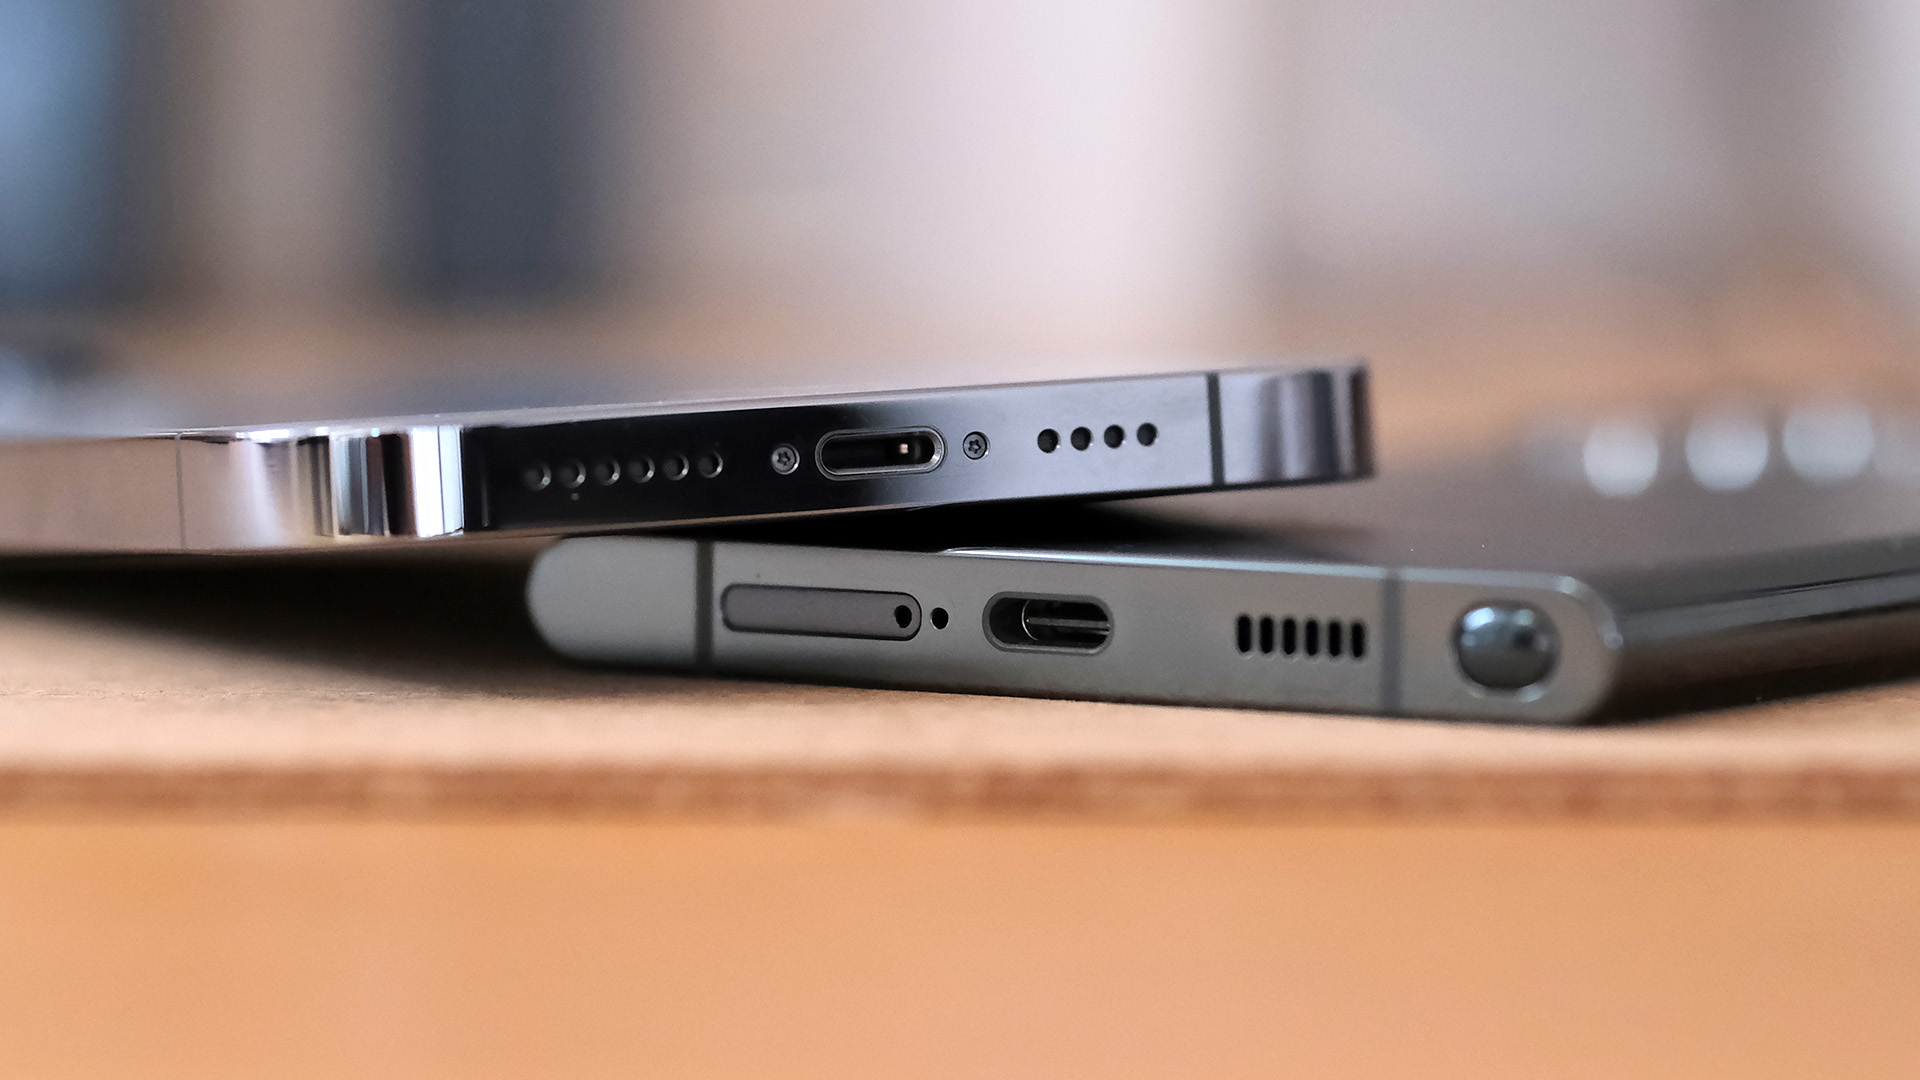 Dos teléfonos uno al lado del otro que muestran el puerto Lightning vs USB C